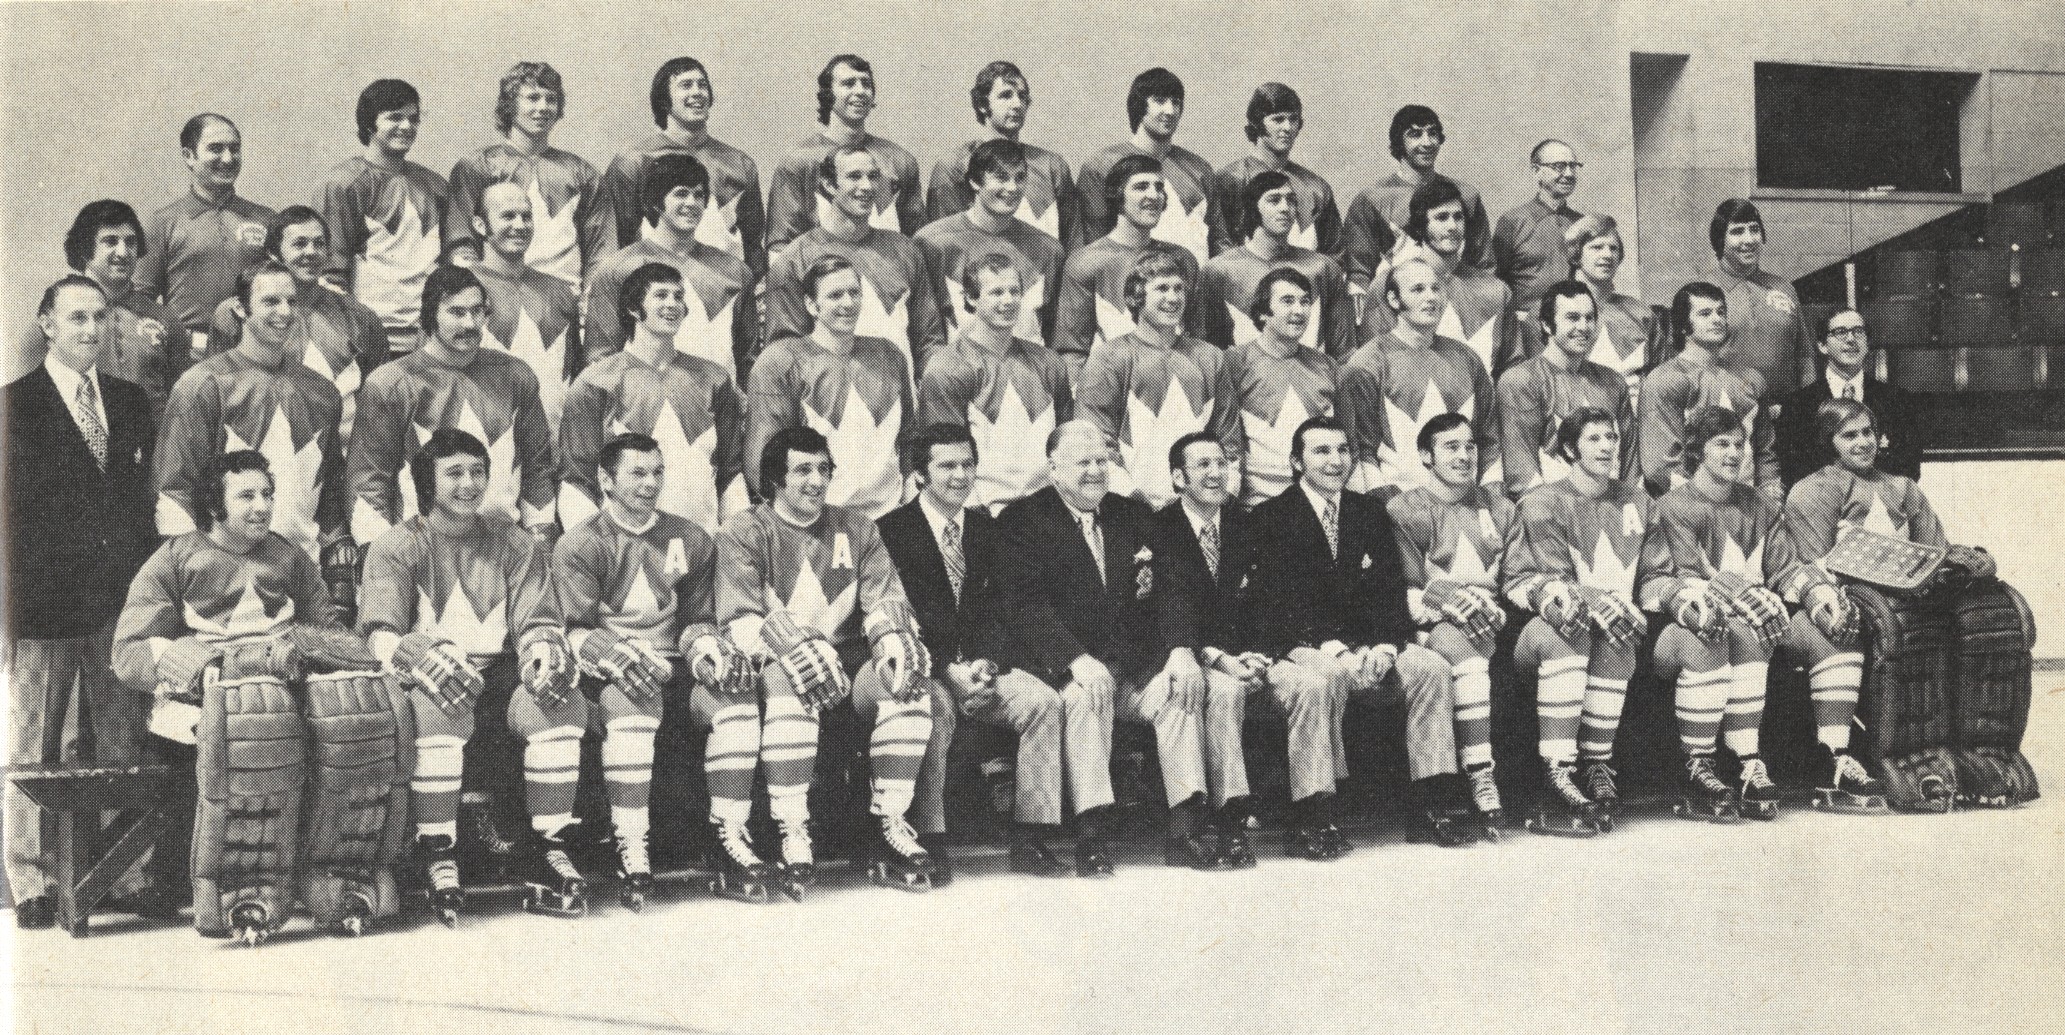 команда канады 1972